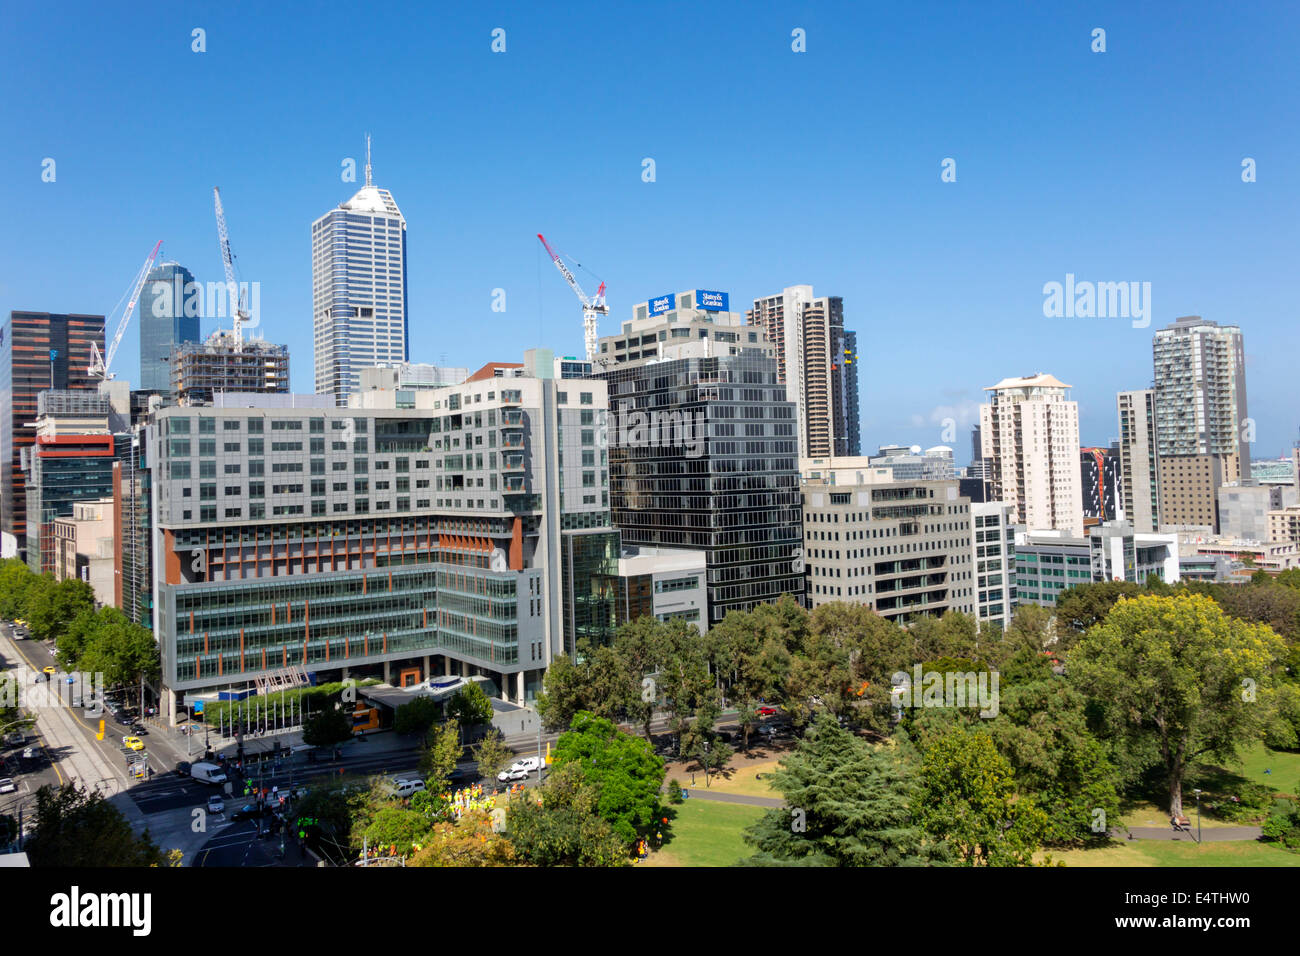 Melbourne Australie,William Street,hauteur,bâtiments,gratte-ciel,horizon de la ville,grues de construction,Flagstaff Gardens,public,parc,AU140319005 Banque D'Images